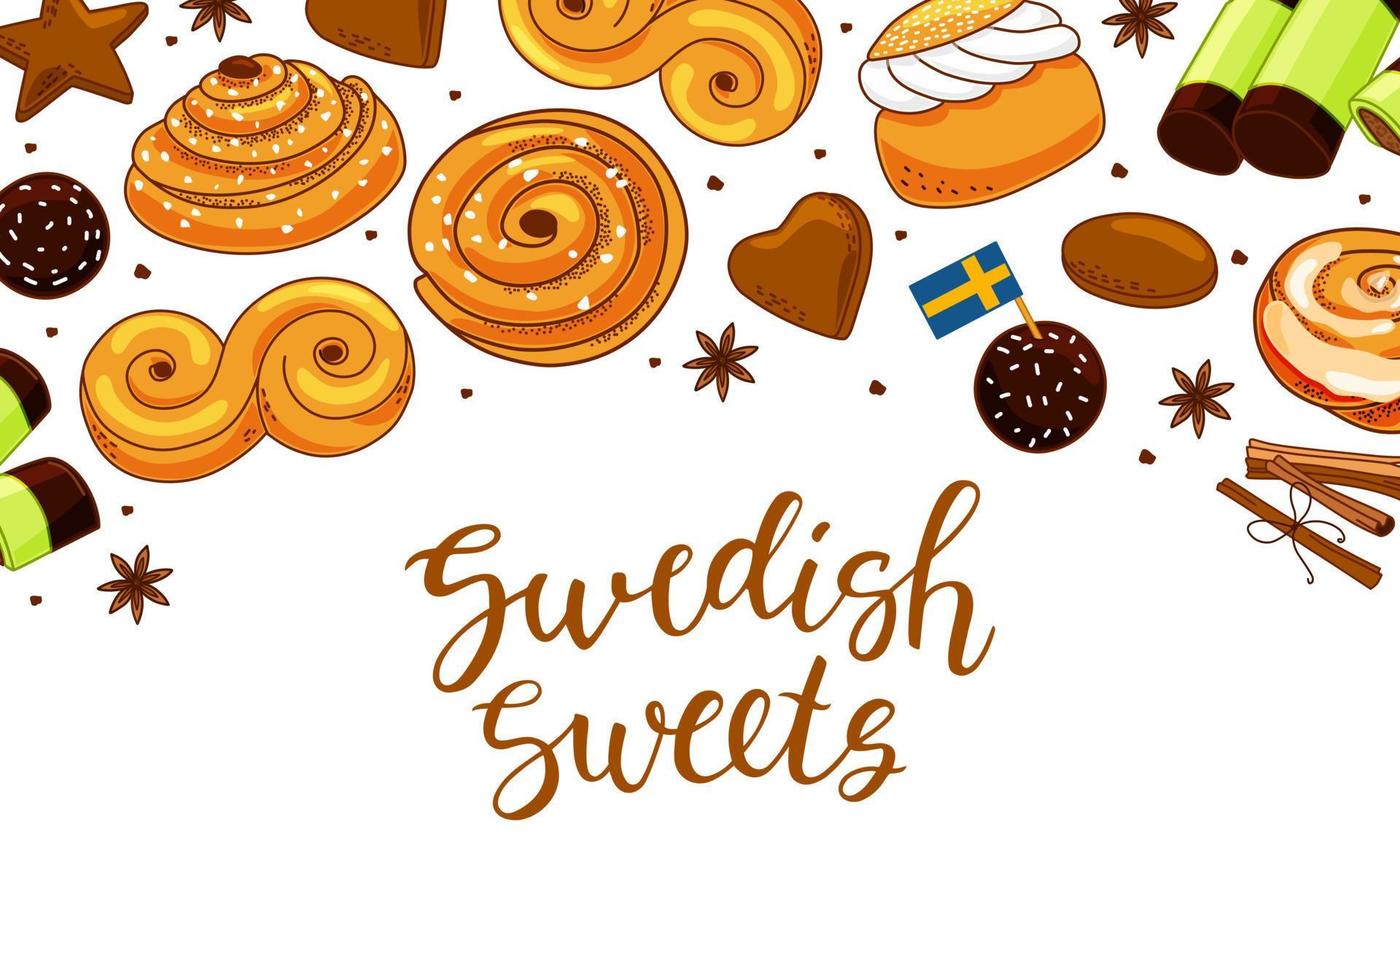 traditioneller schwedischer Süßigkeitenhintergrund mit Kalligrafie. Kanelbulle-Brötchen, Zimtschnecke, Pepparkakor, Semla, Lussekatt, Dammzucker und Chokladboll. Cartoon-Vektor-Illustration vektor